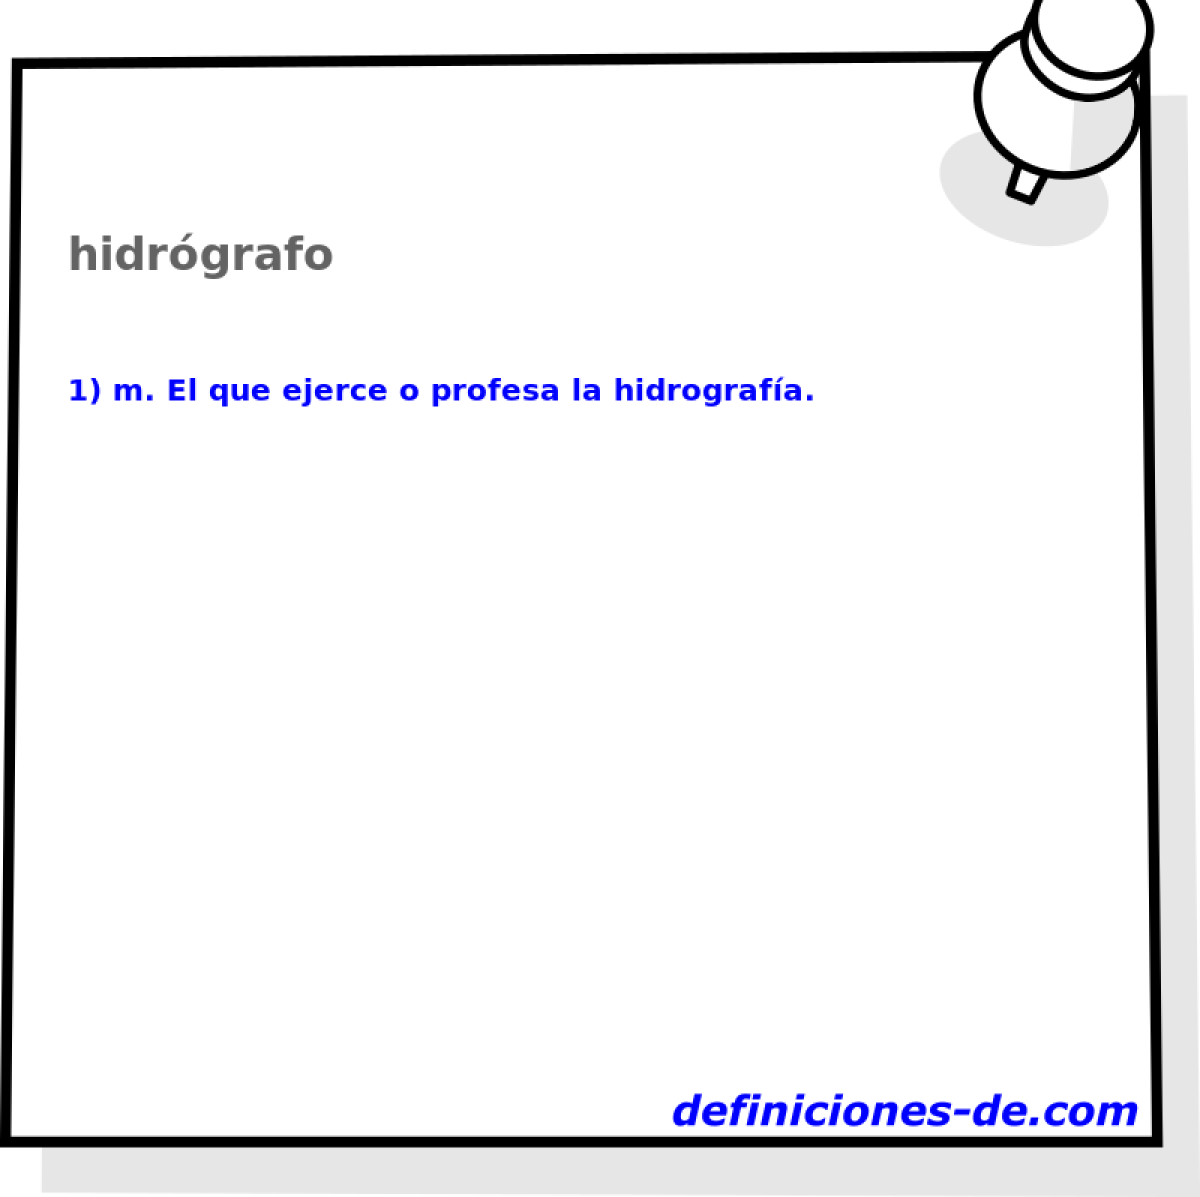 hidrgrafo 